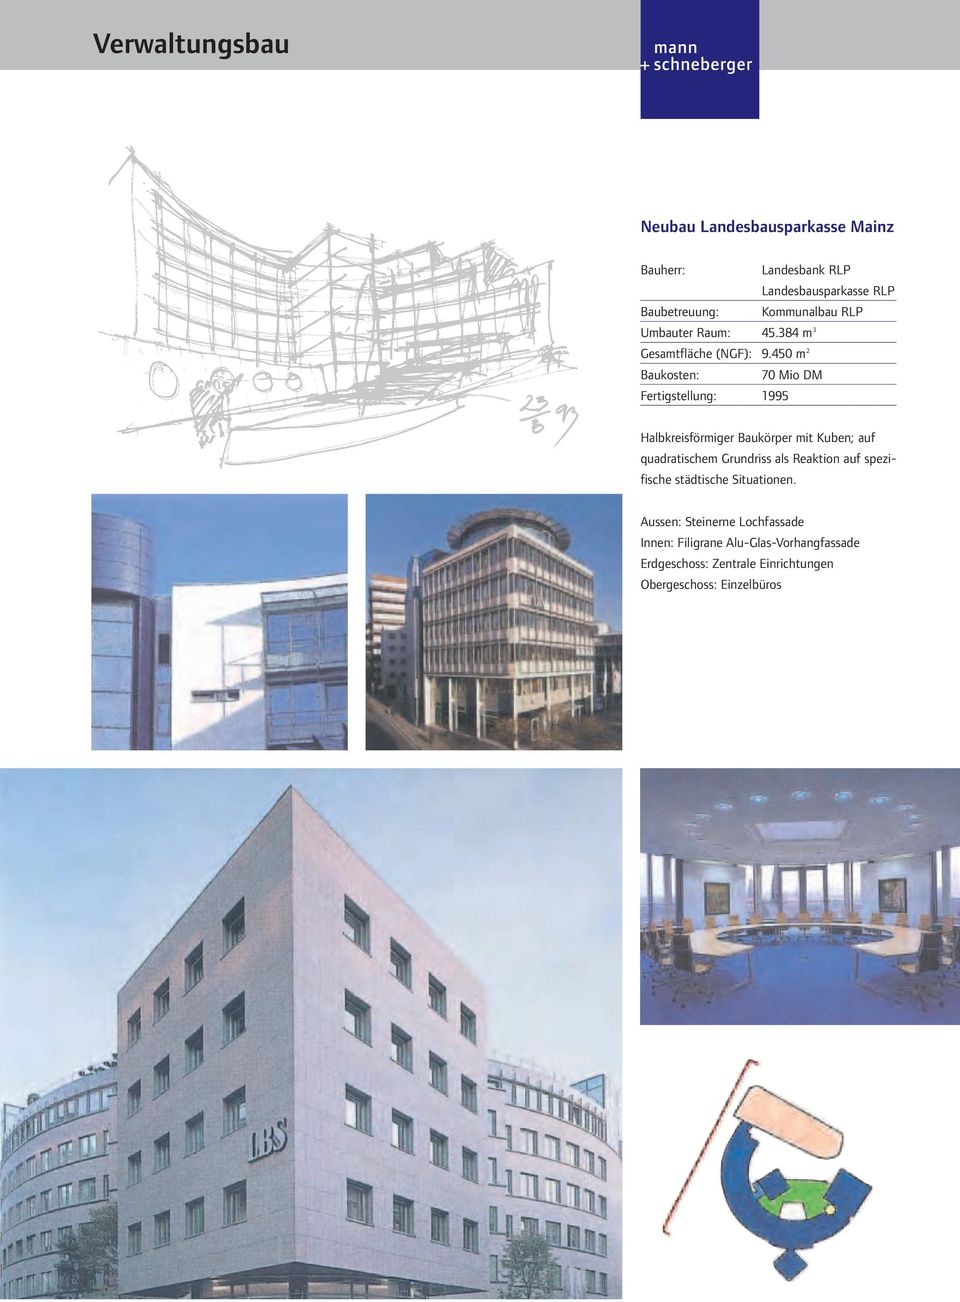 450 m 2 Baukosten: 70 Mio DM Fertigstellung: 1995 Halbkreisförmiger Baukörper mit Kuben; auf quadratischem Grundriss